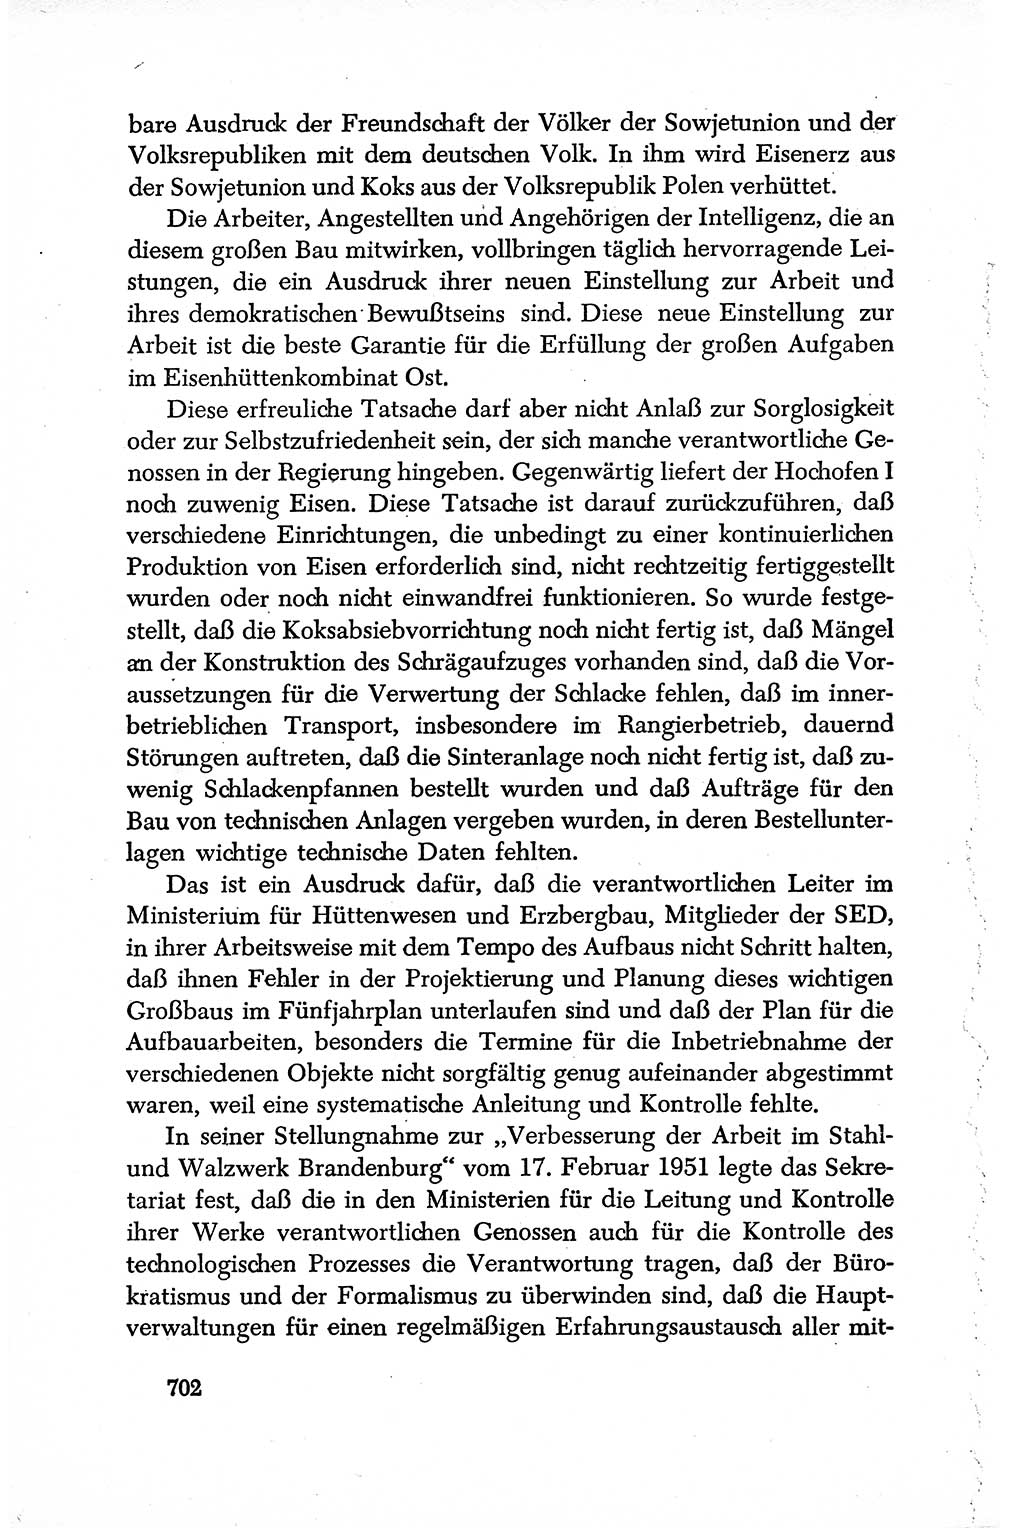 Dokumente der Sozialistischen Einheitspartei Deutschlands (SED) [Deutsche Demokratische Republik (DDR)] 1950-1952, Seite 702 (Dok. SED DDR 1950-1952, S. 702)